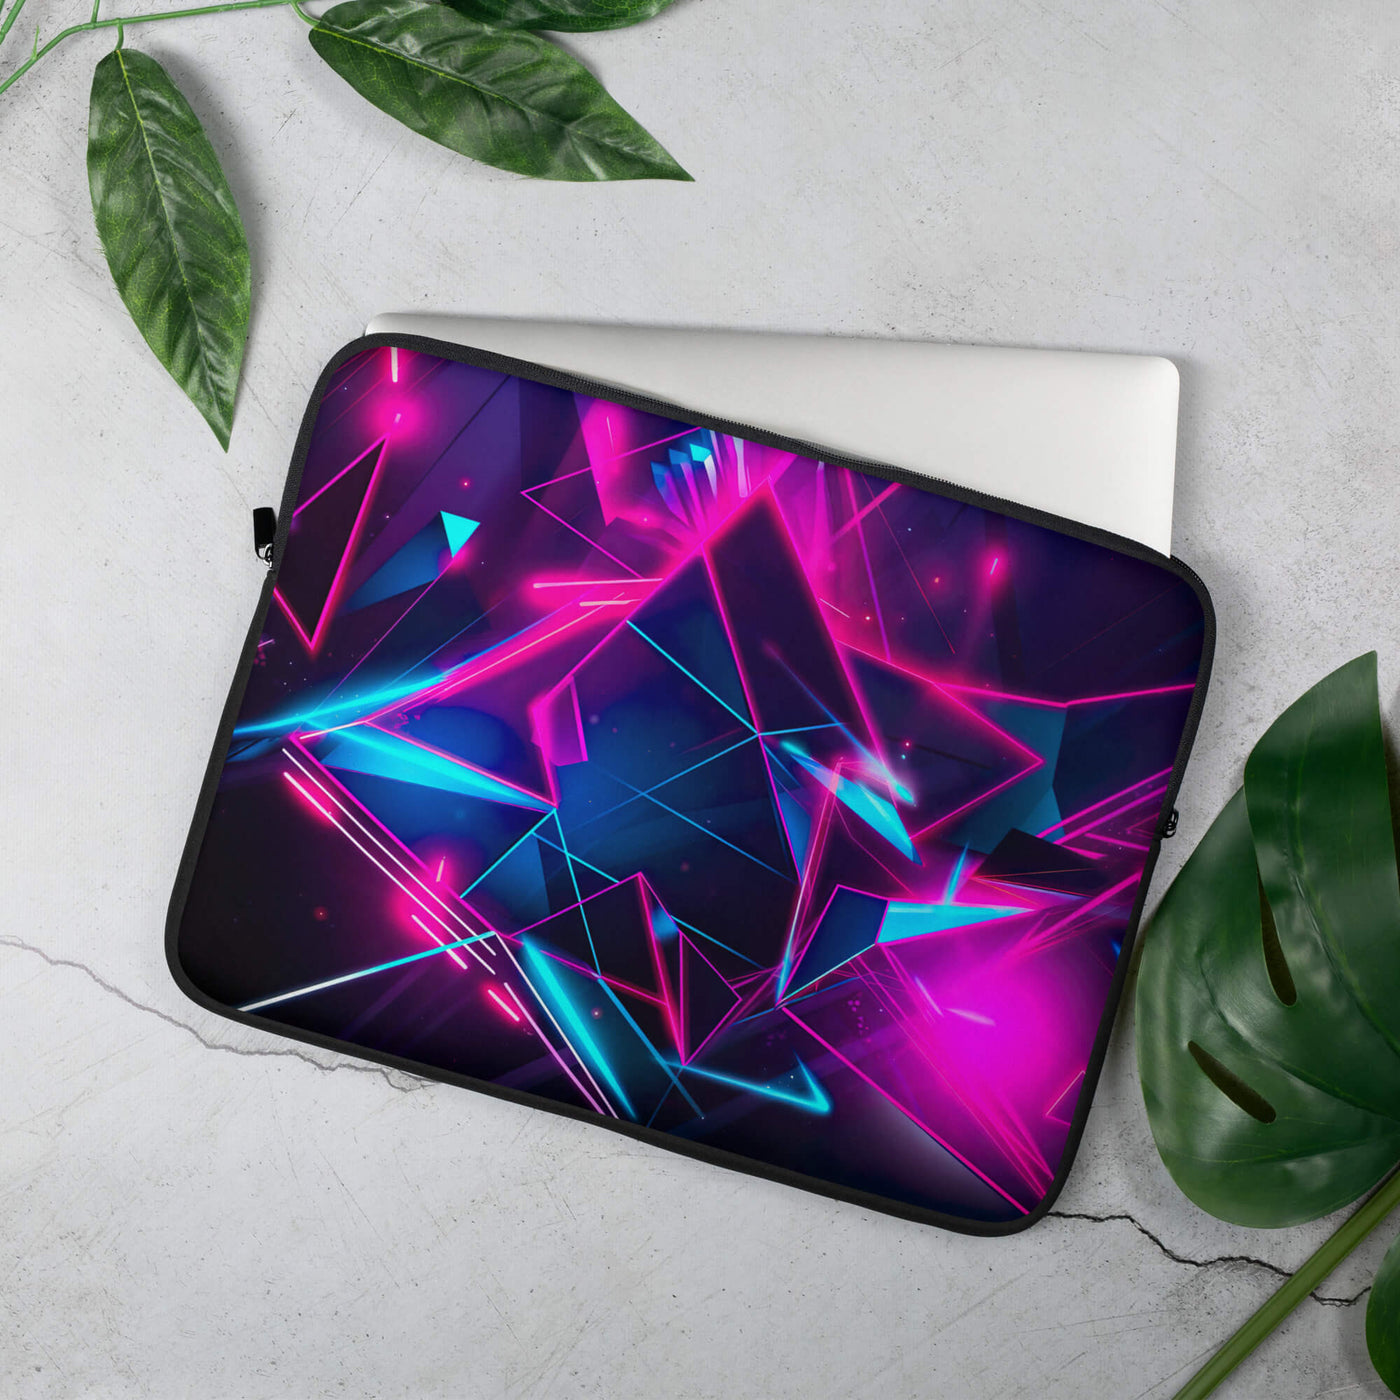 Stylish Laptop Sleeve | Abstract Neon Art 2